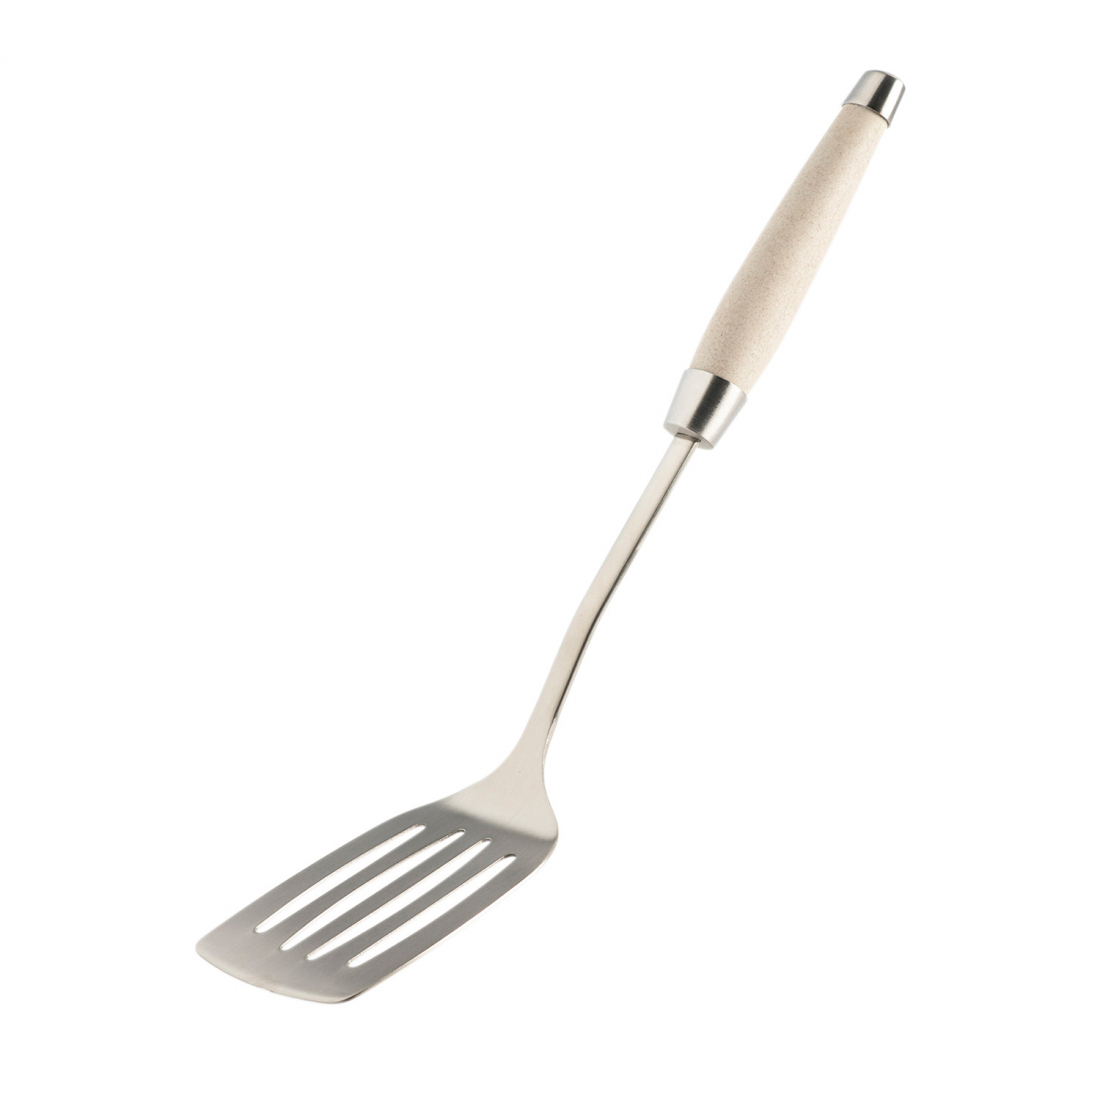 Steel Fried Shovel 38 cm